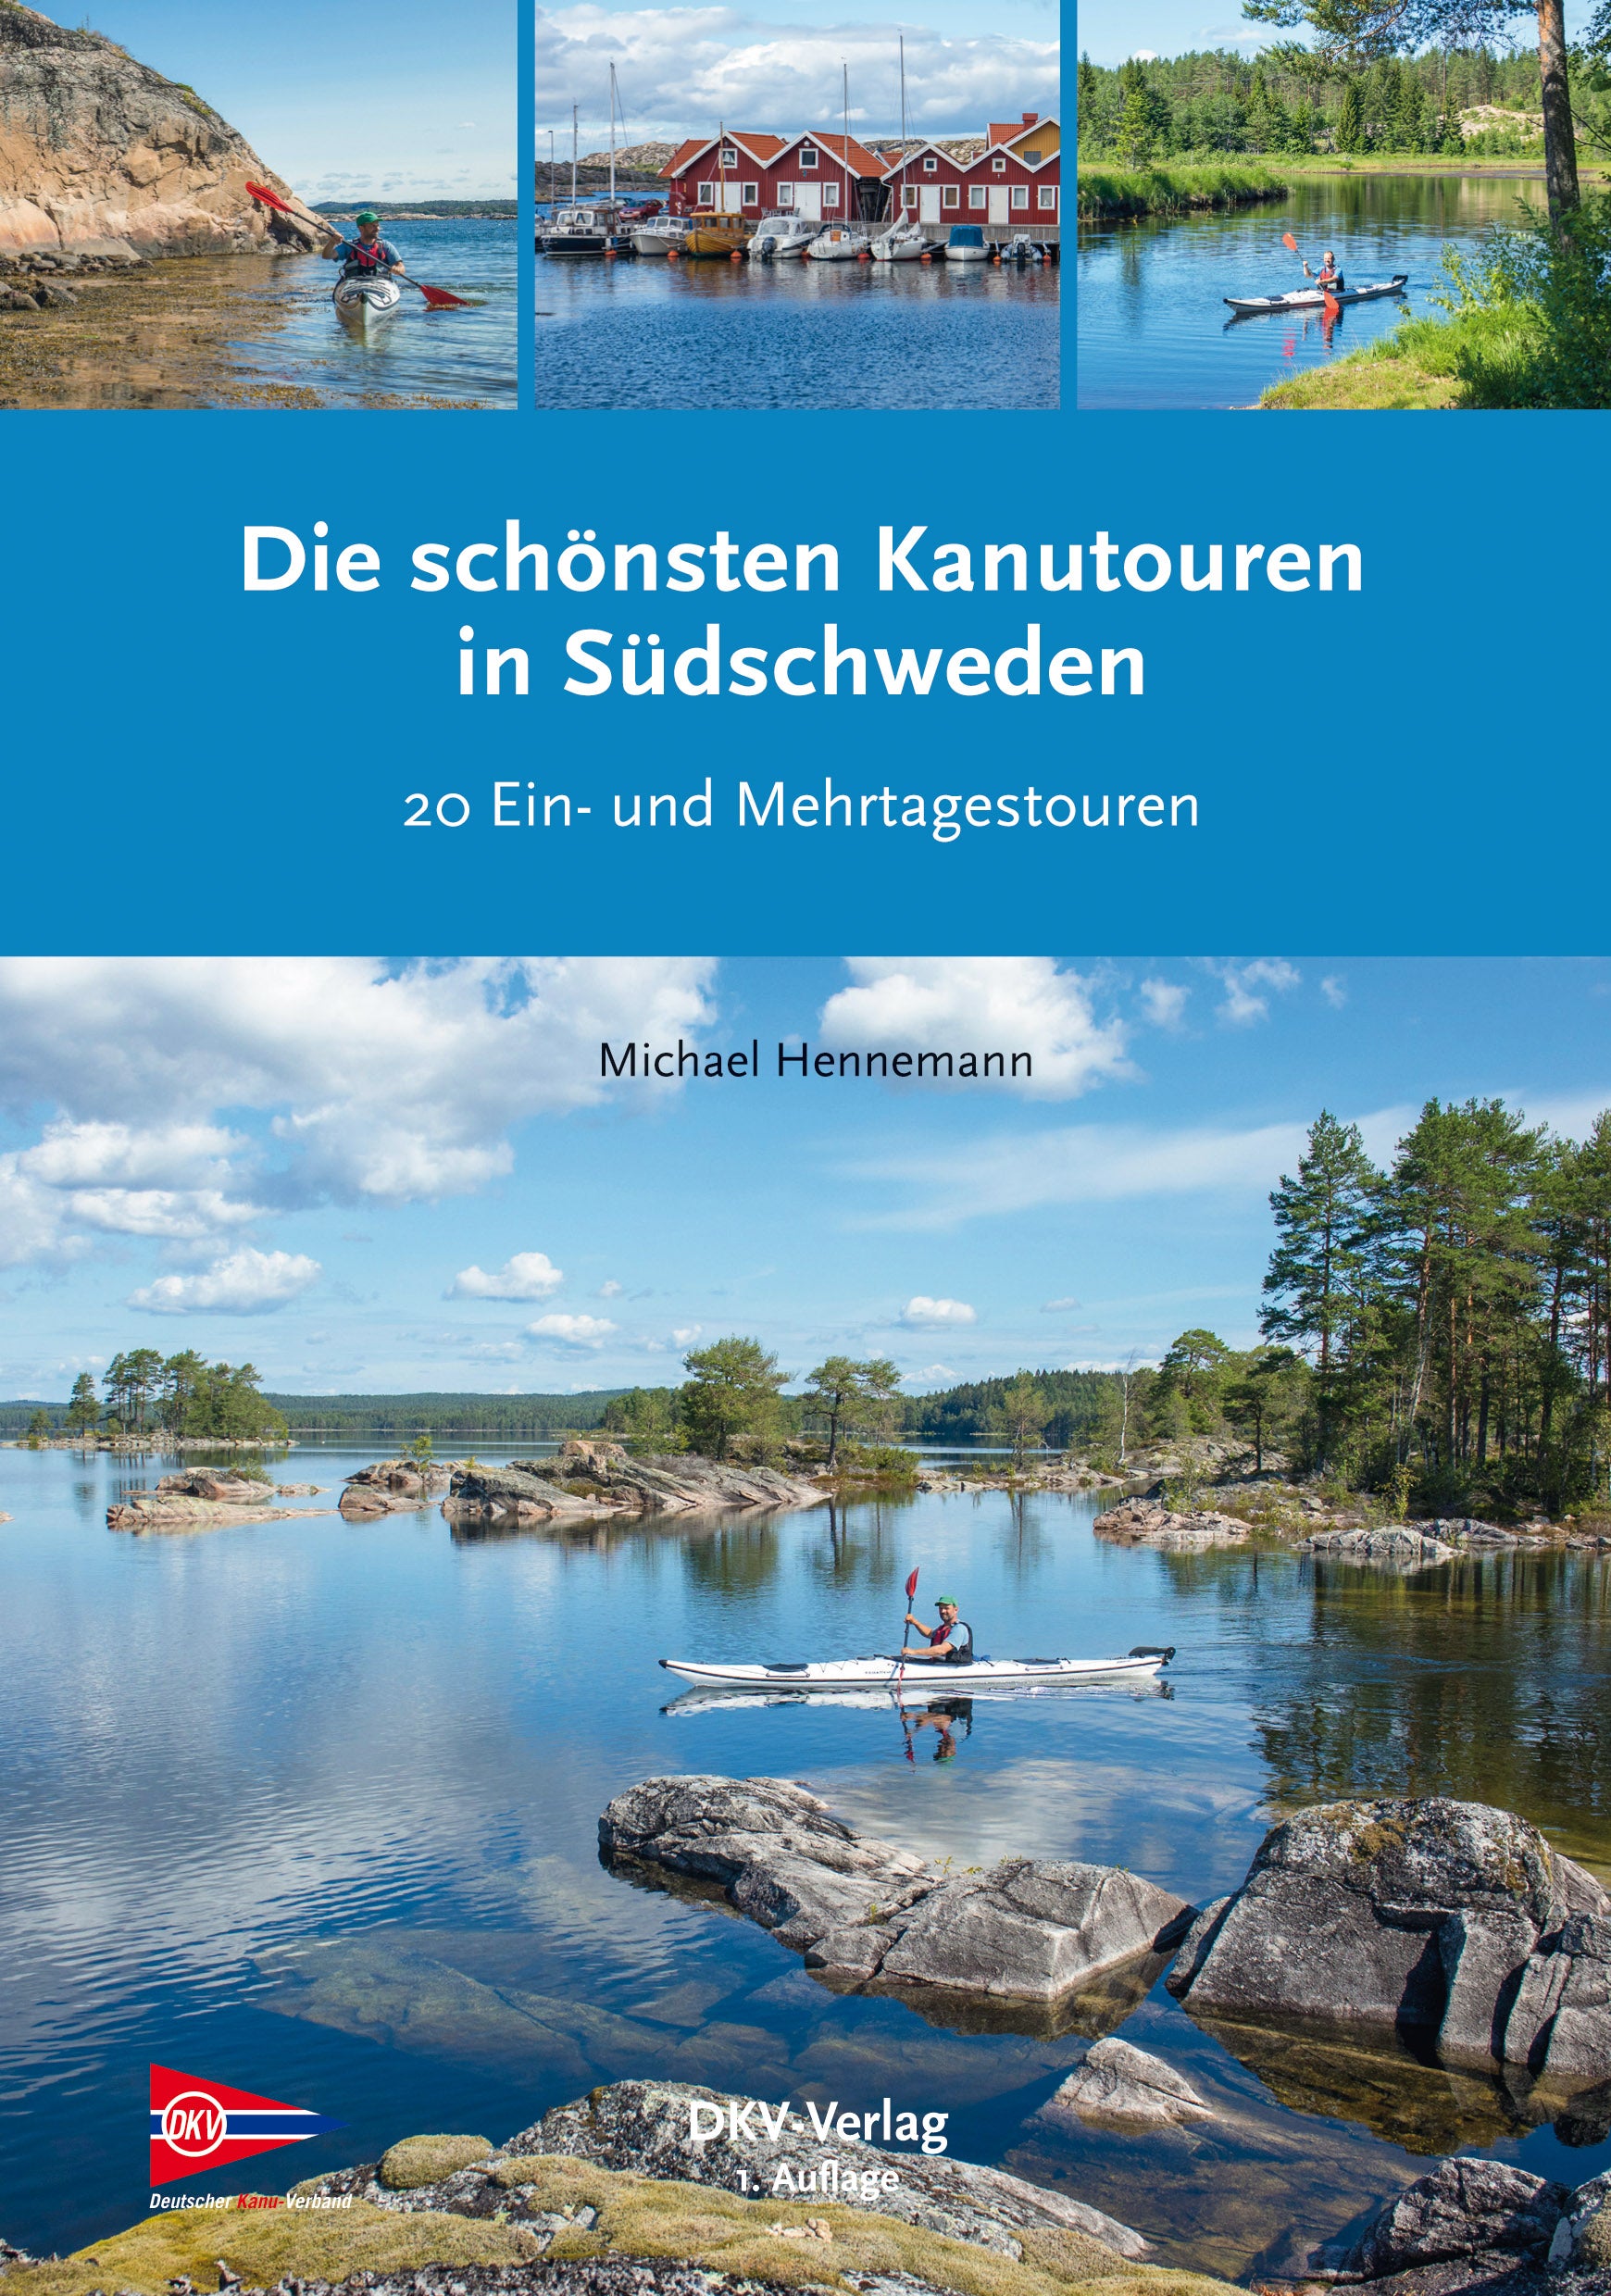 Die schönsten Kanutouren in Südschweden - DKV-Verlag